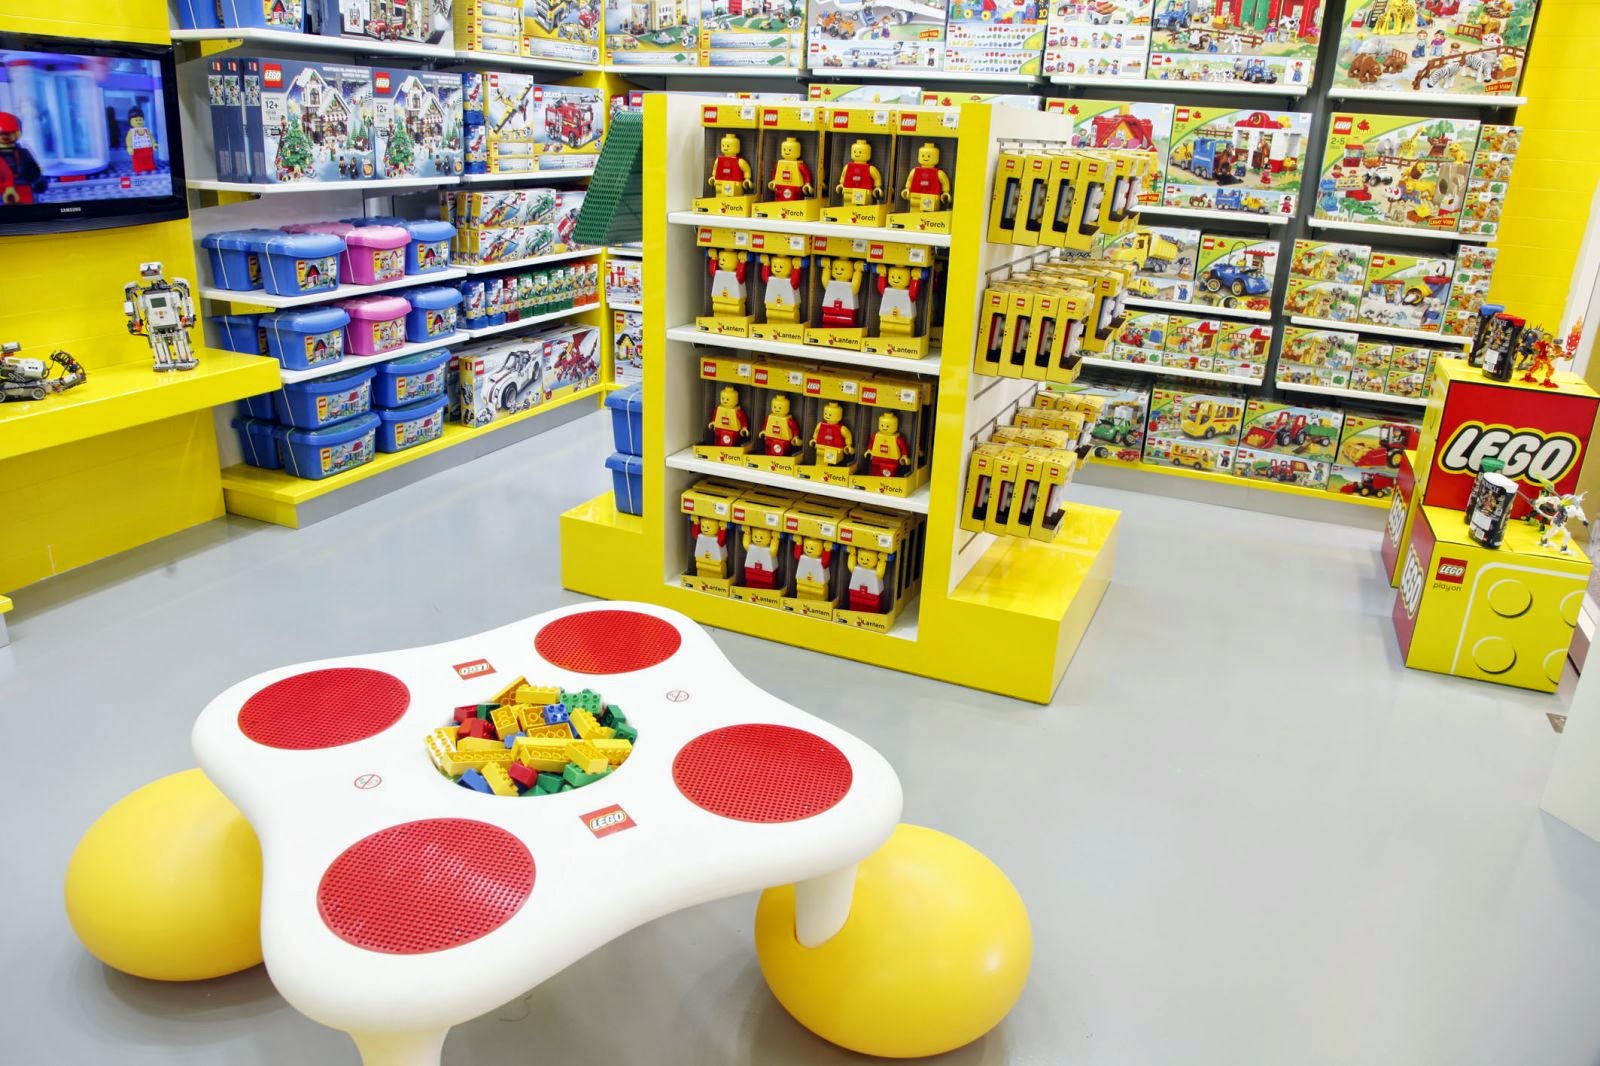 BH GAMES - A Mais Completa Loja de Games de Belo Horizonte - LEGO